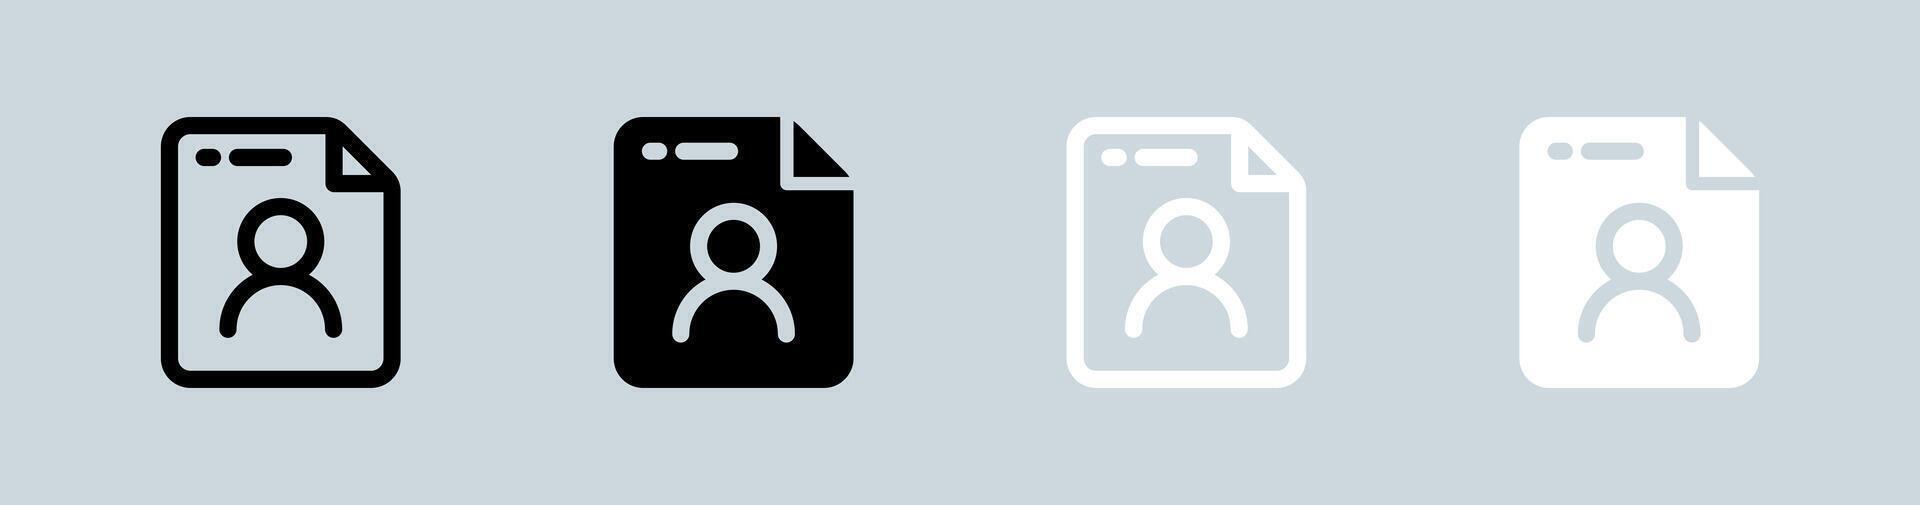 personnel Les données icône ensemble dans noir et blanche. intimité panneaux vecteur illustration.